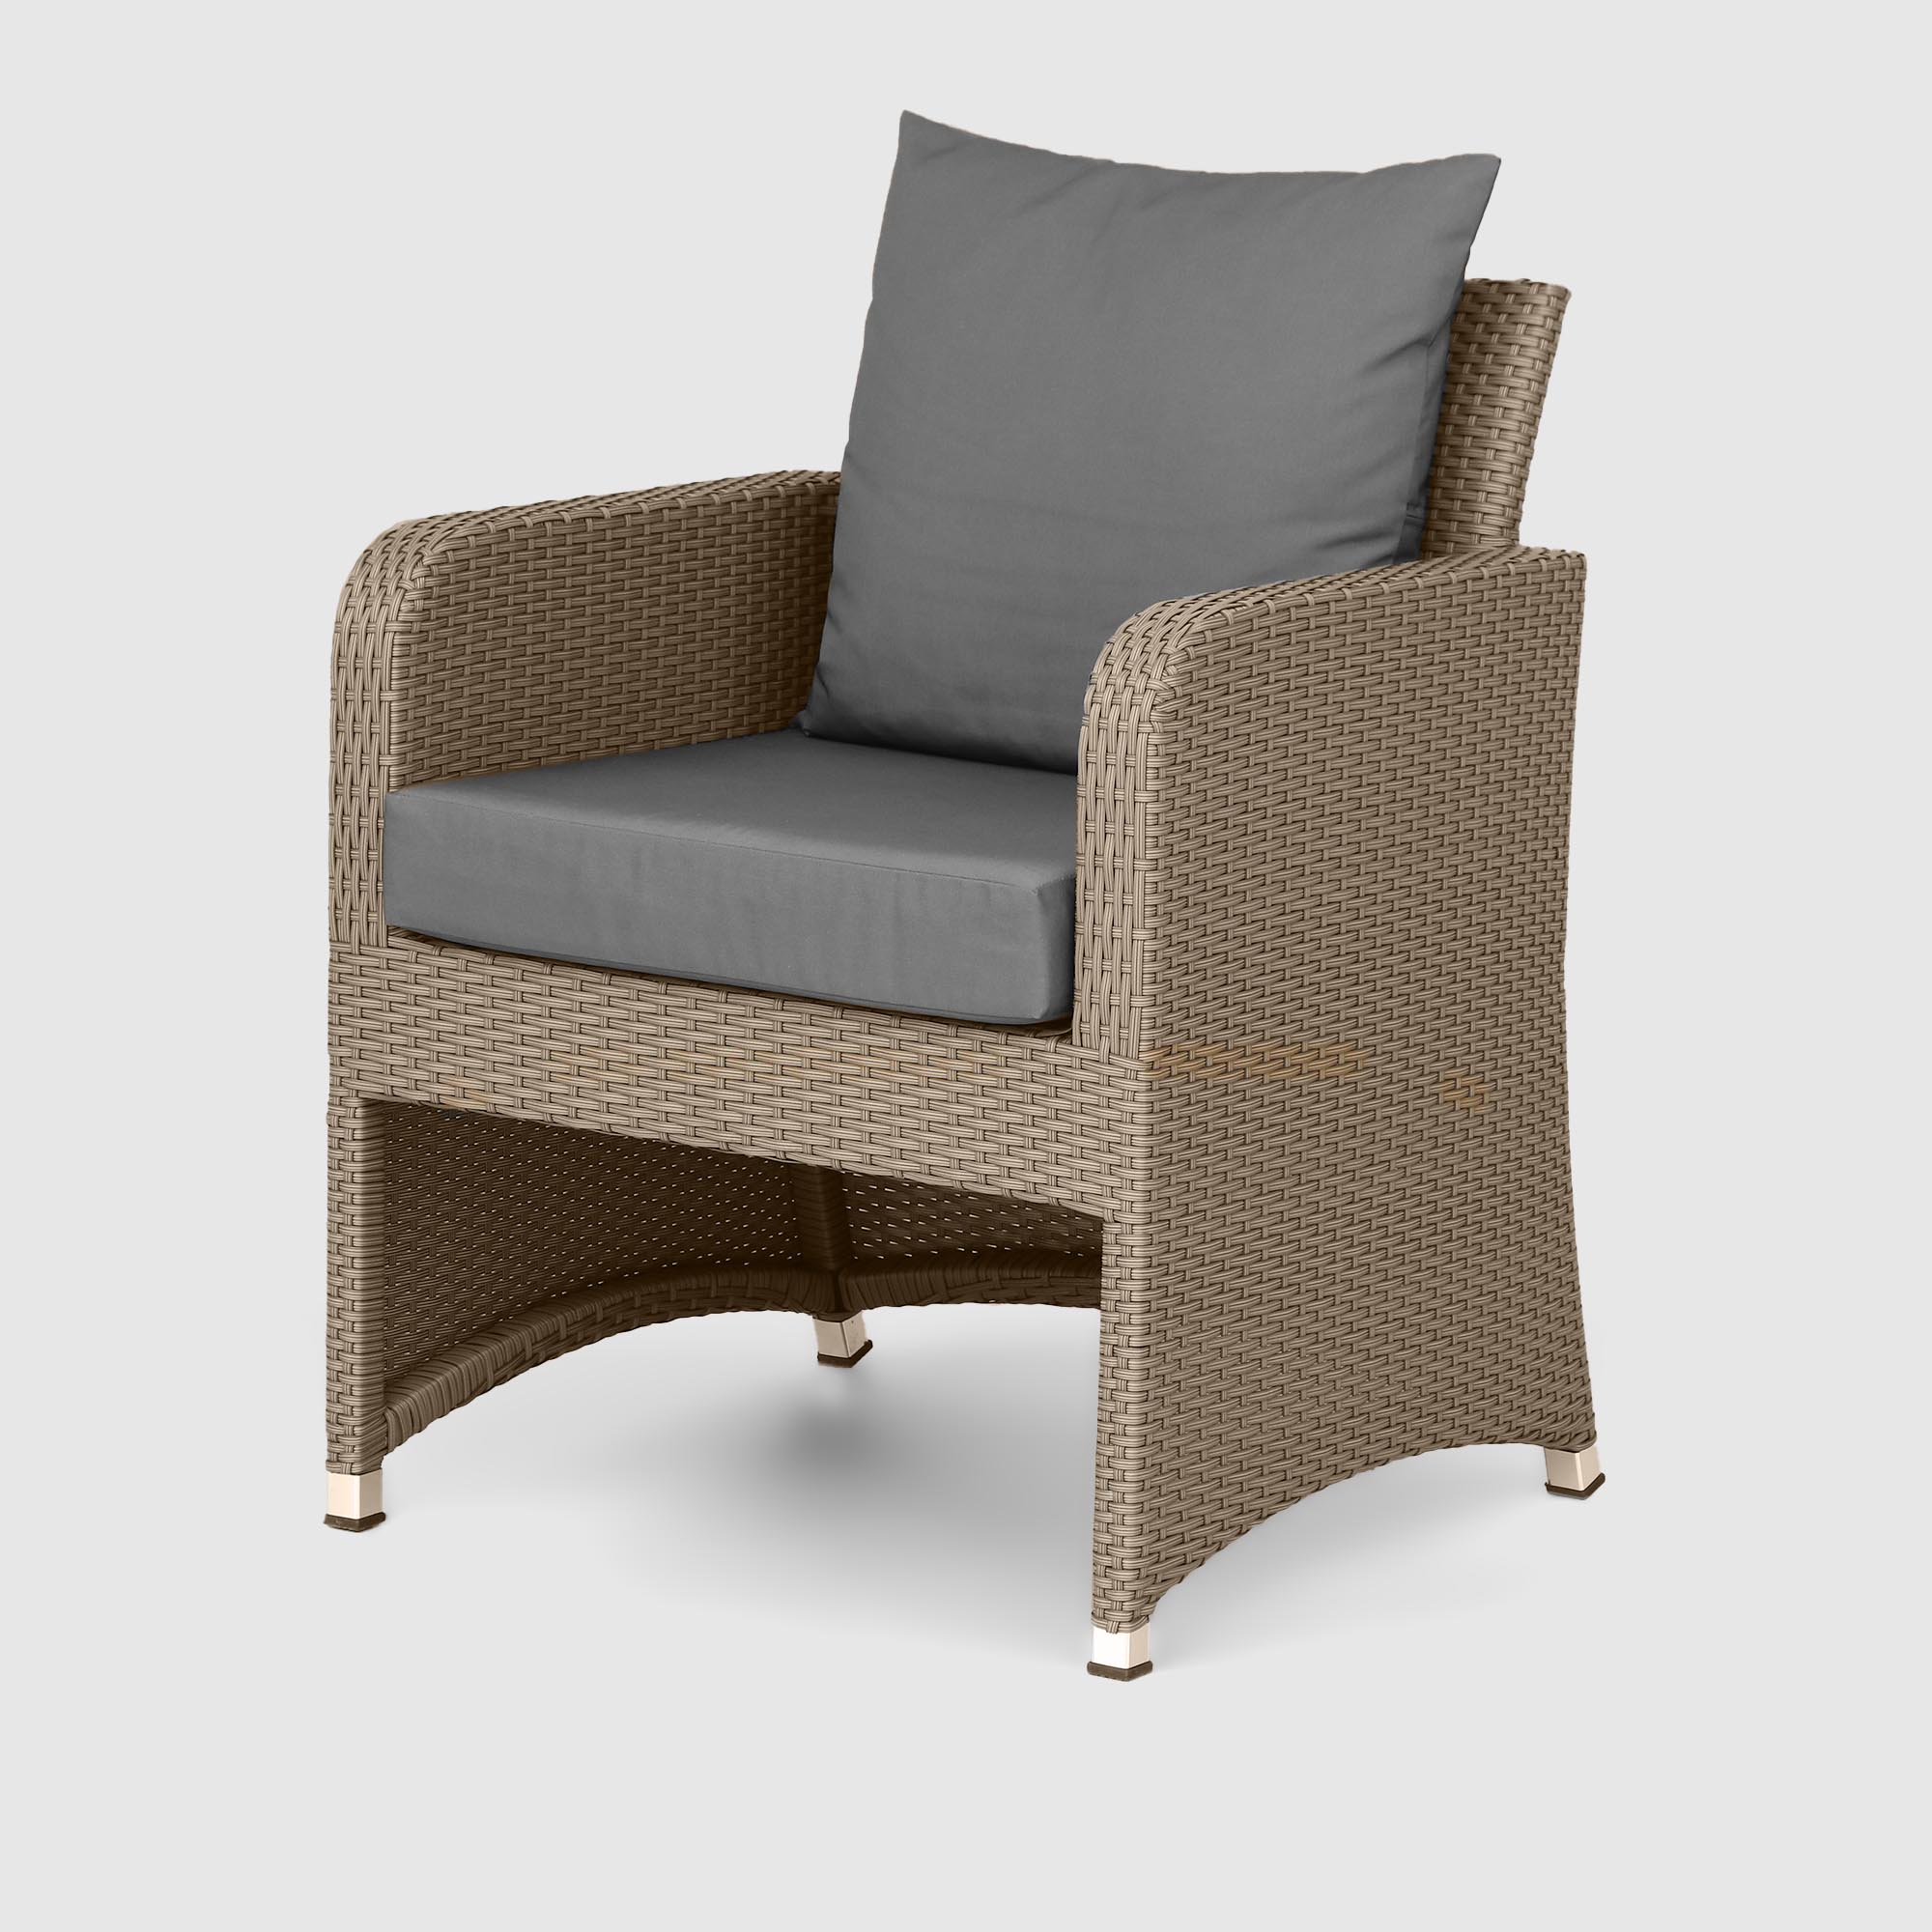 Комплект мебели NS Rattan LWS 21 коричневый с серым 3 предмета, цвет светло-коричневый, размер 220х75х75 - фото 2